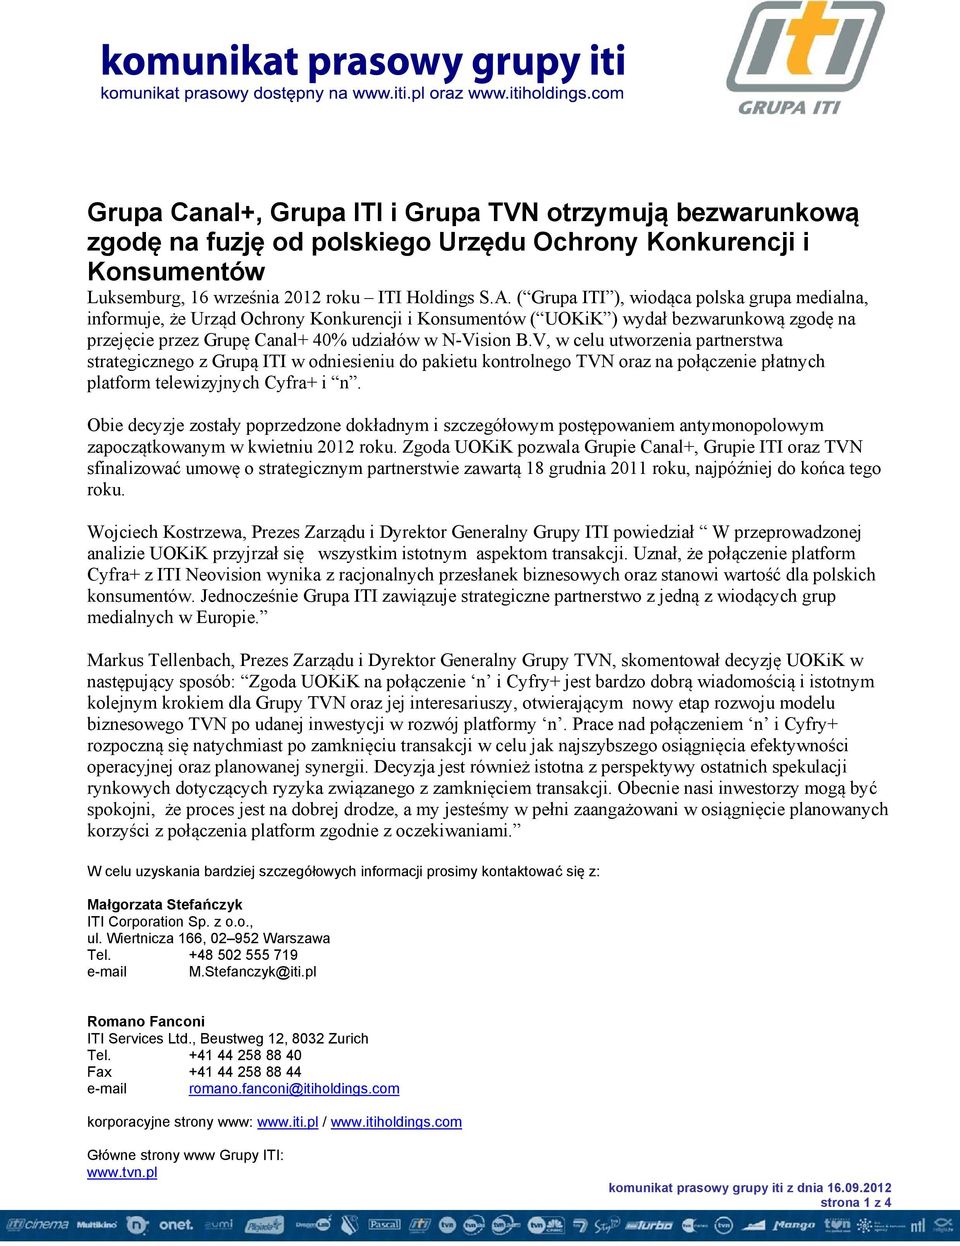 V, w celu utworzenia partnerstwa strategicznego z Grupą ITI w odniesieniu do pakietu kontrolnego TVN oraz na połączenie płatnych platform telewizyjnych Cyfra+ i n.